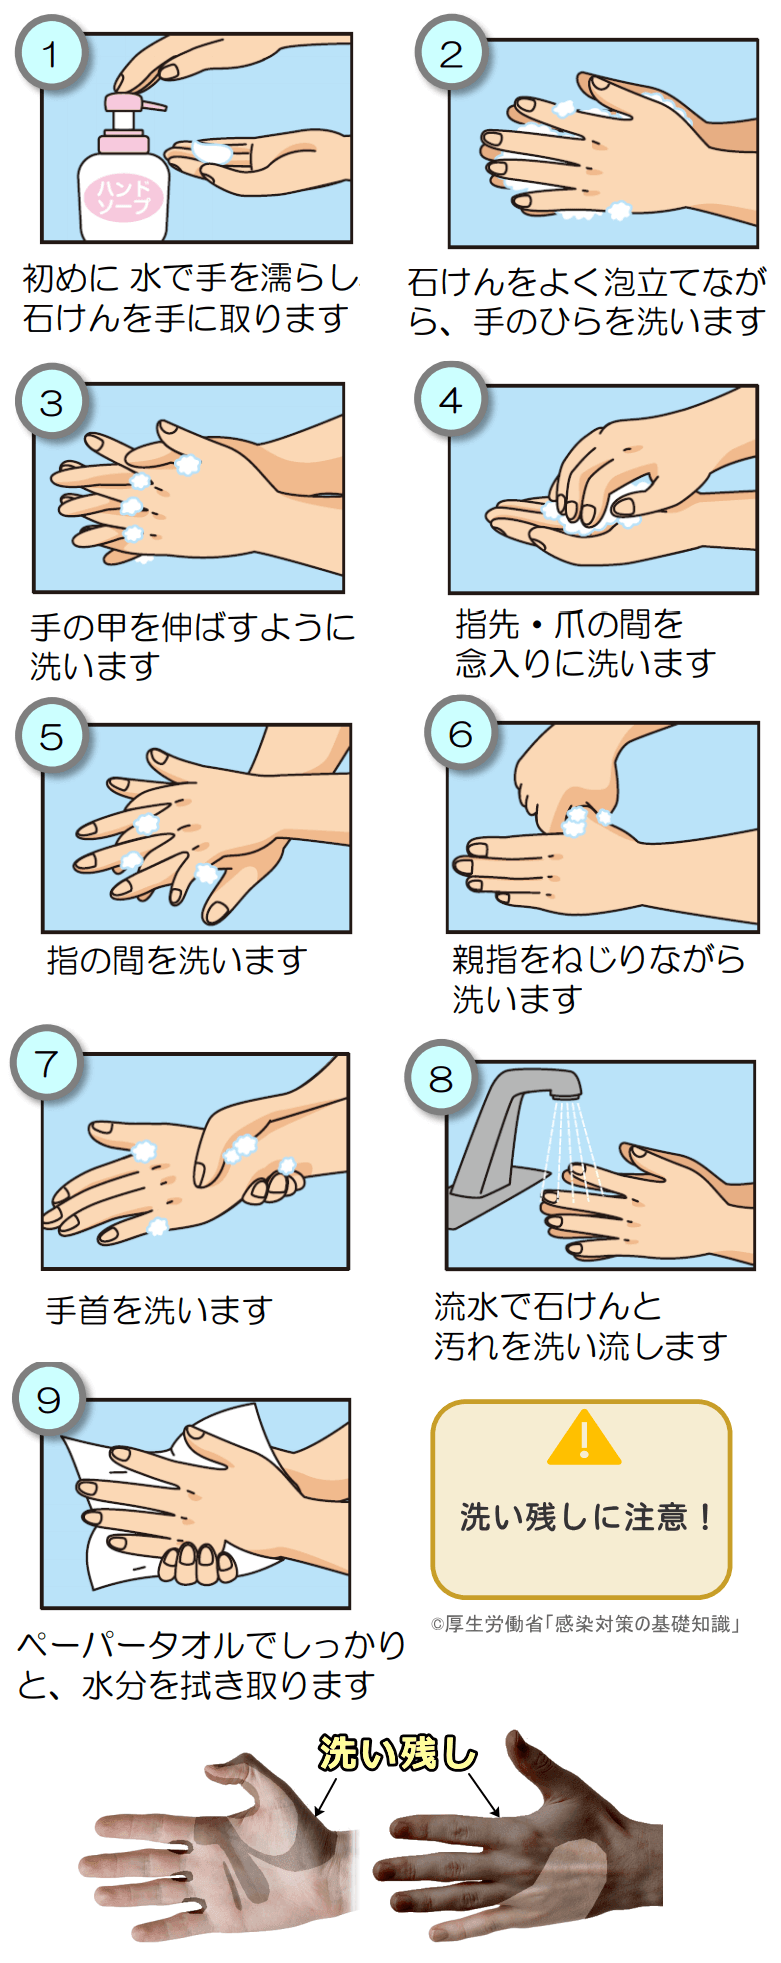 ウイルスを残さないための正しい手洗い方法